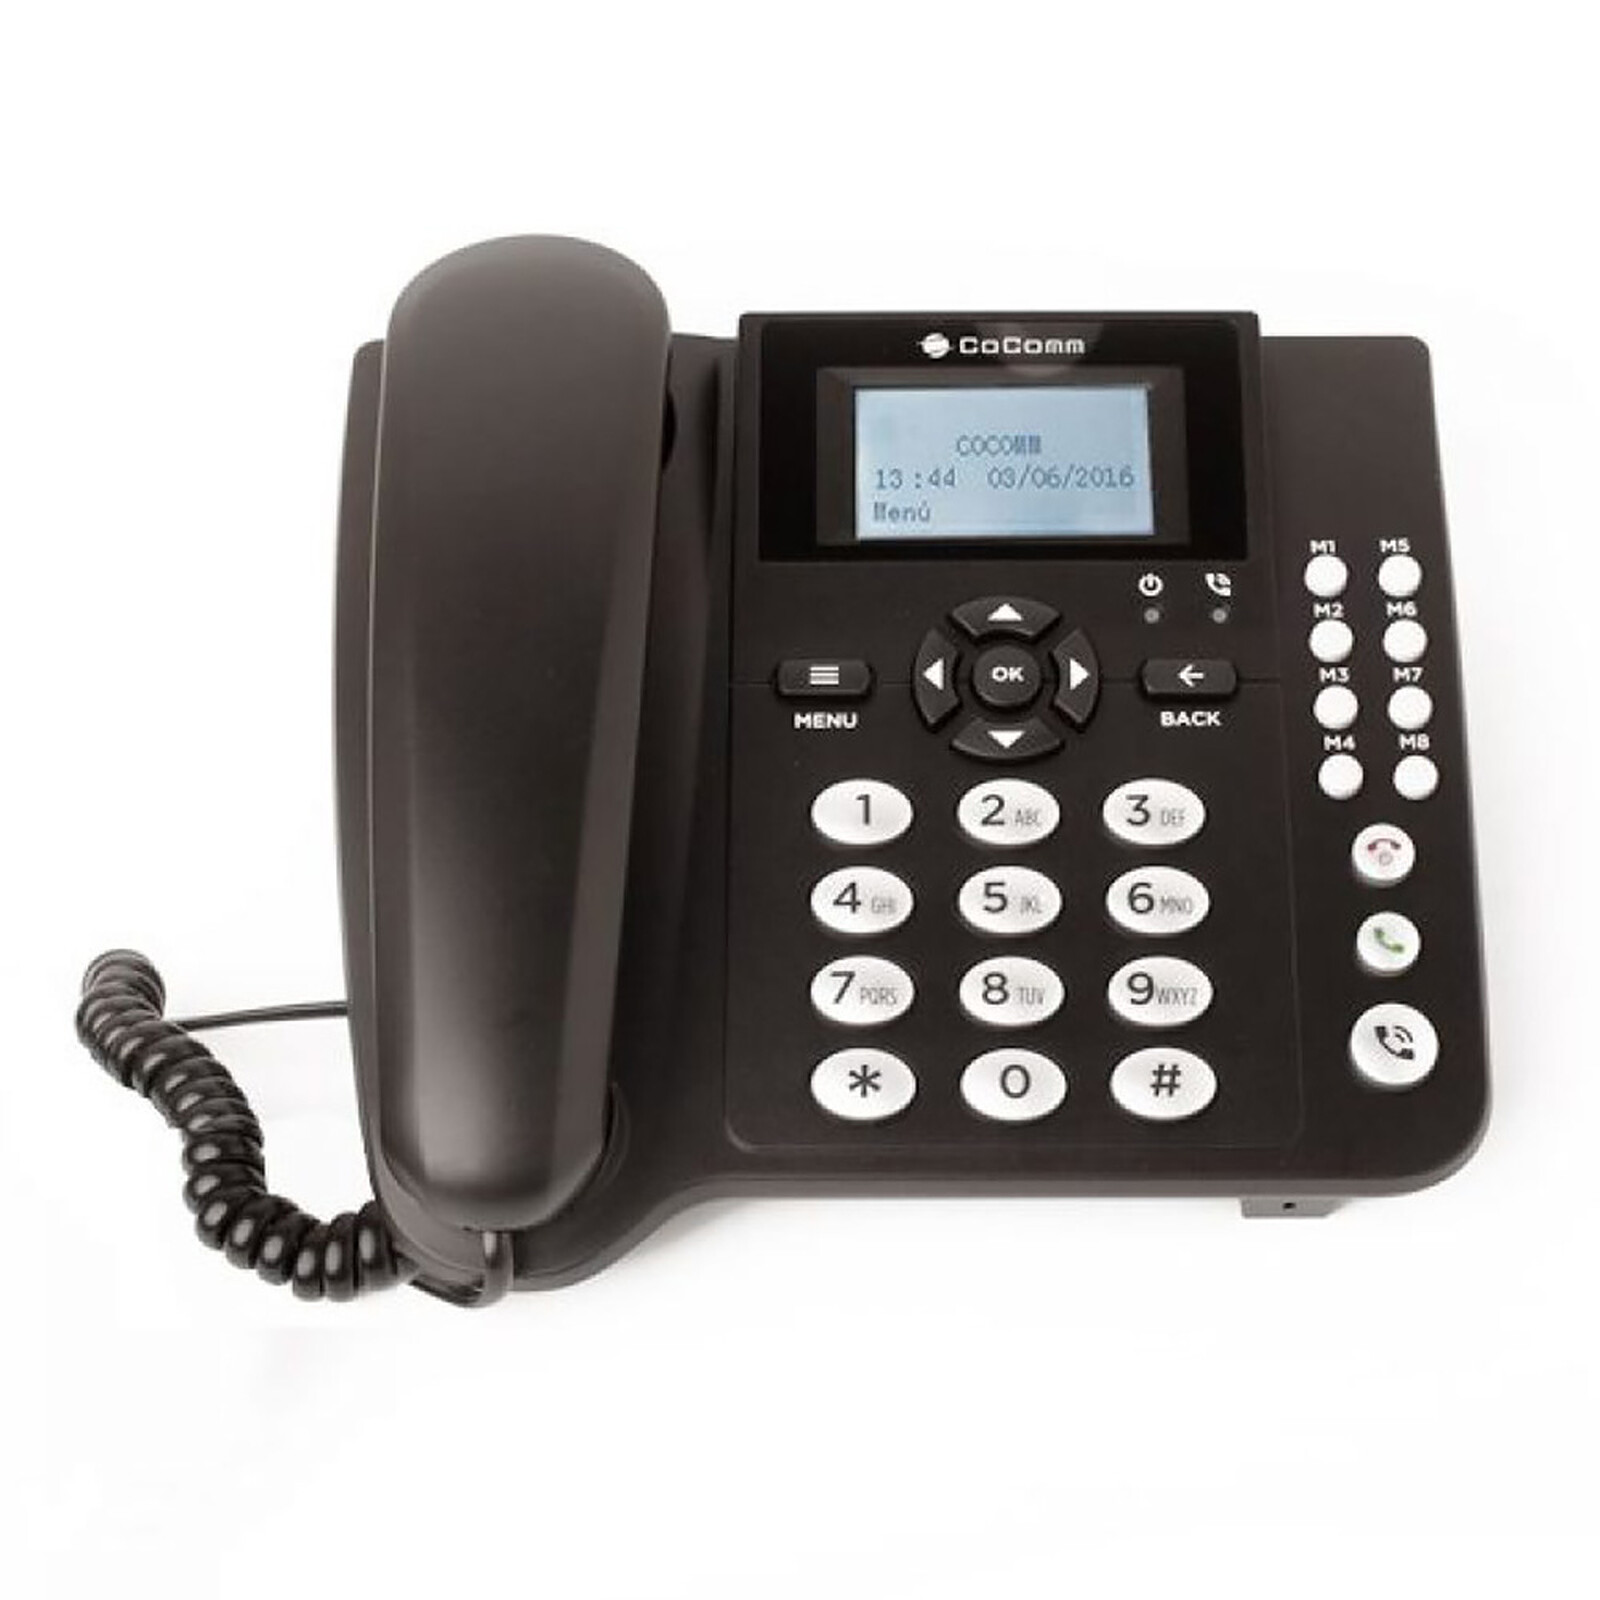 Thomson Reply Noir - Téléphone filaire - Garantie 3 ans LDLC